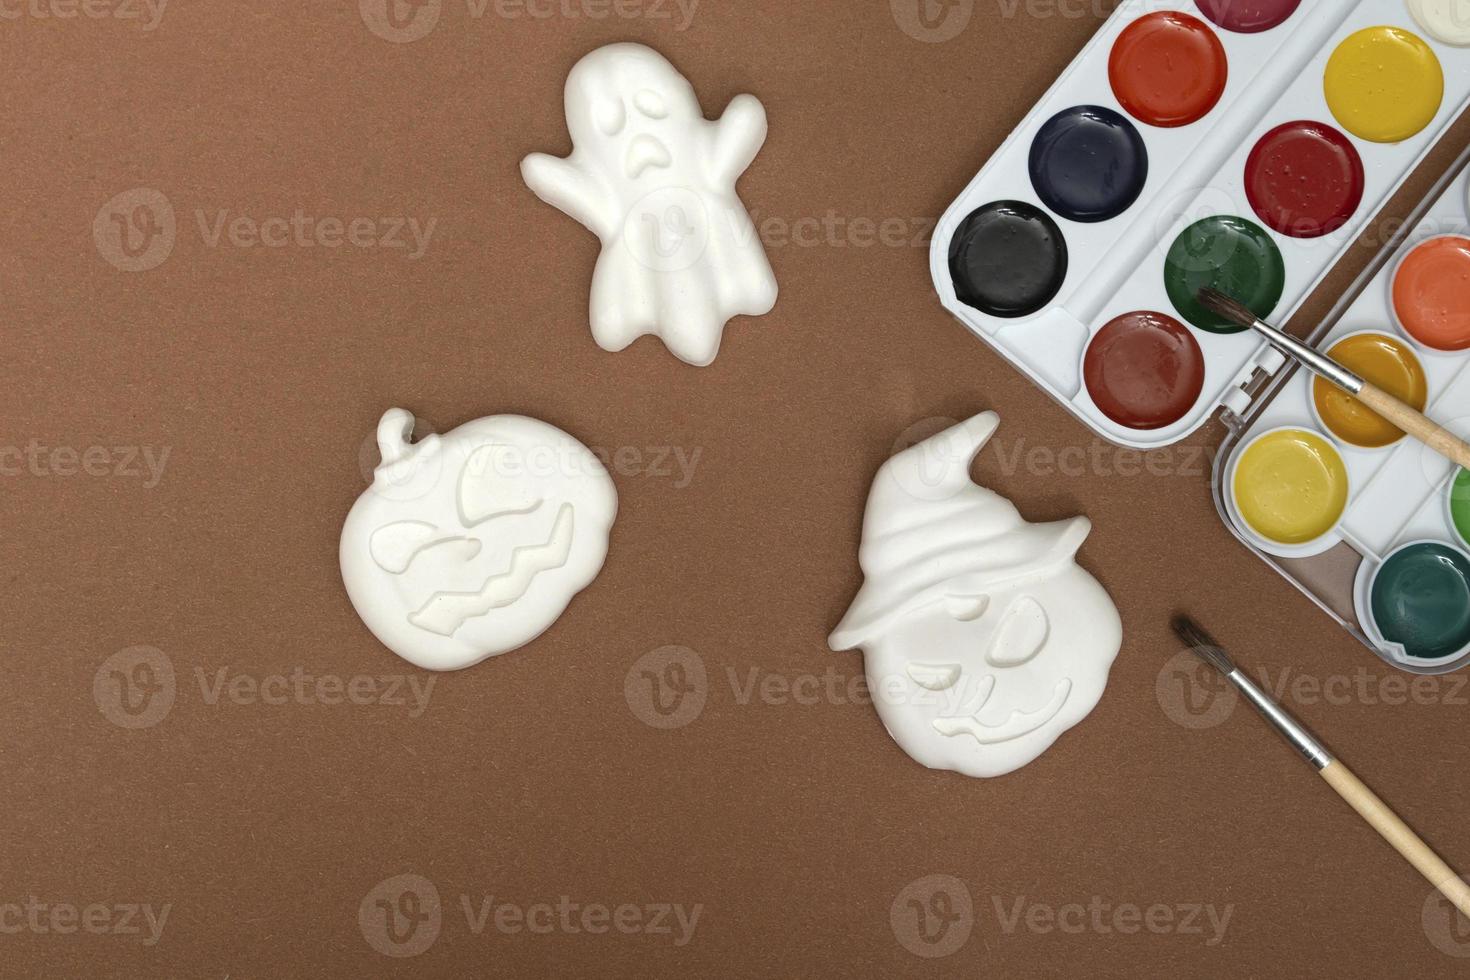 artesanato de halloween. estatuetas de abóboras e fantasmas em tinta brilhante com um pincel em um fundo marrom, prontas para serem desenhadas em close-up foto